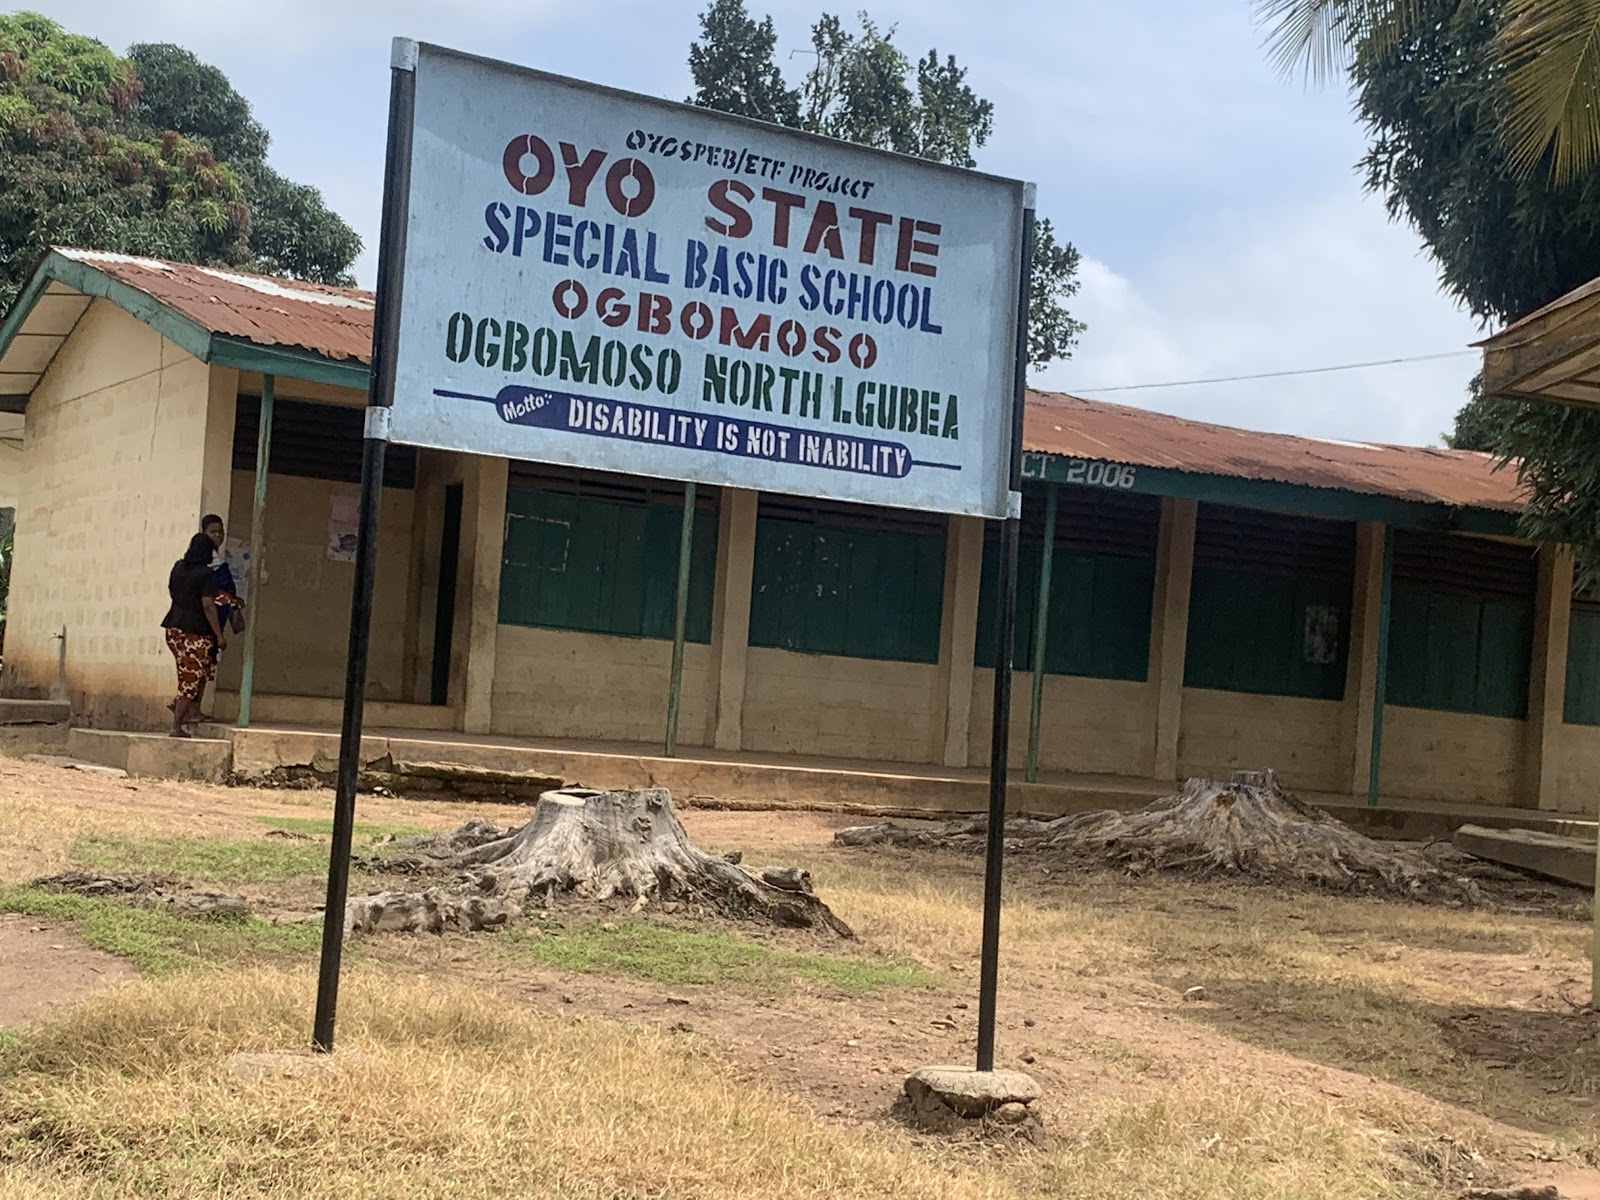 Special Basic School, Ogbomosho